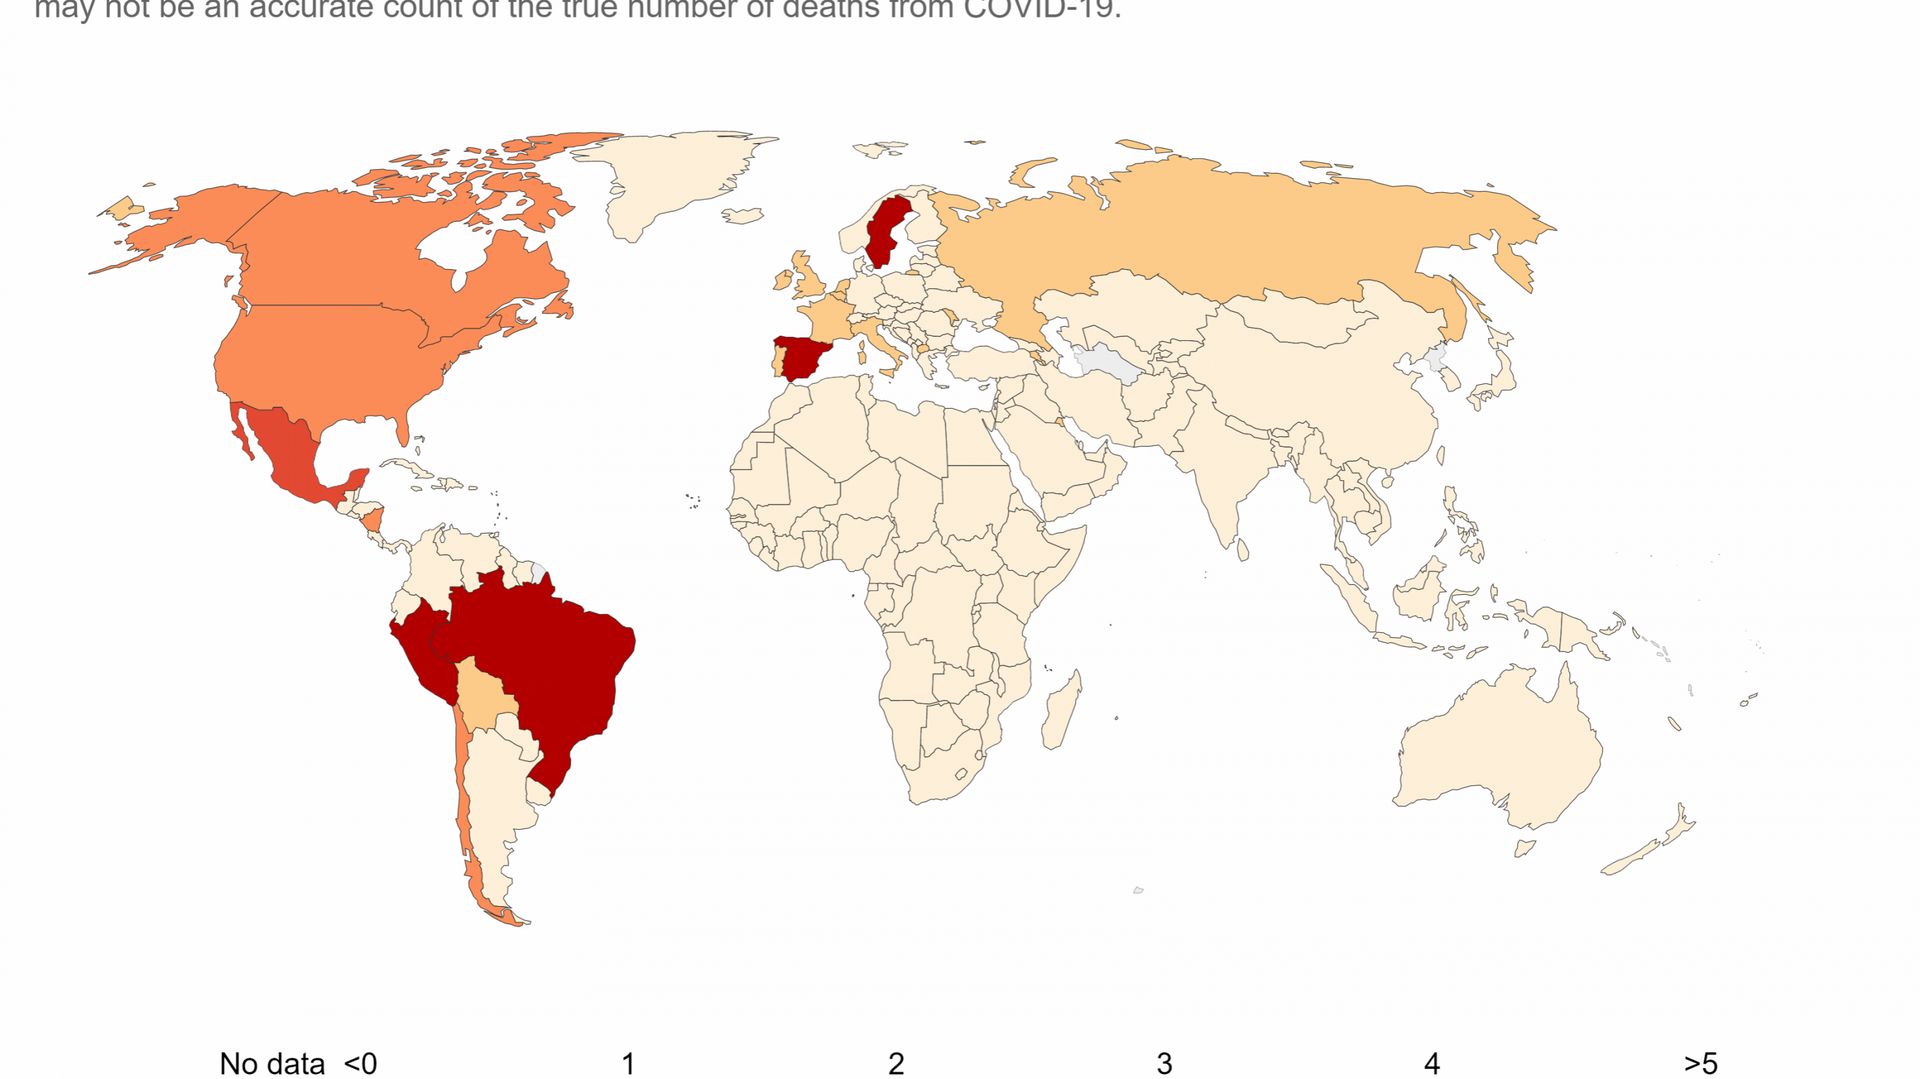 La carte met en évidence les régions où il y a actuellement le plus de nouveaux décès par habitant.